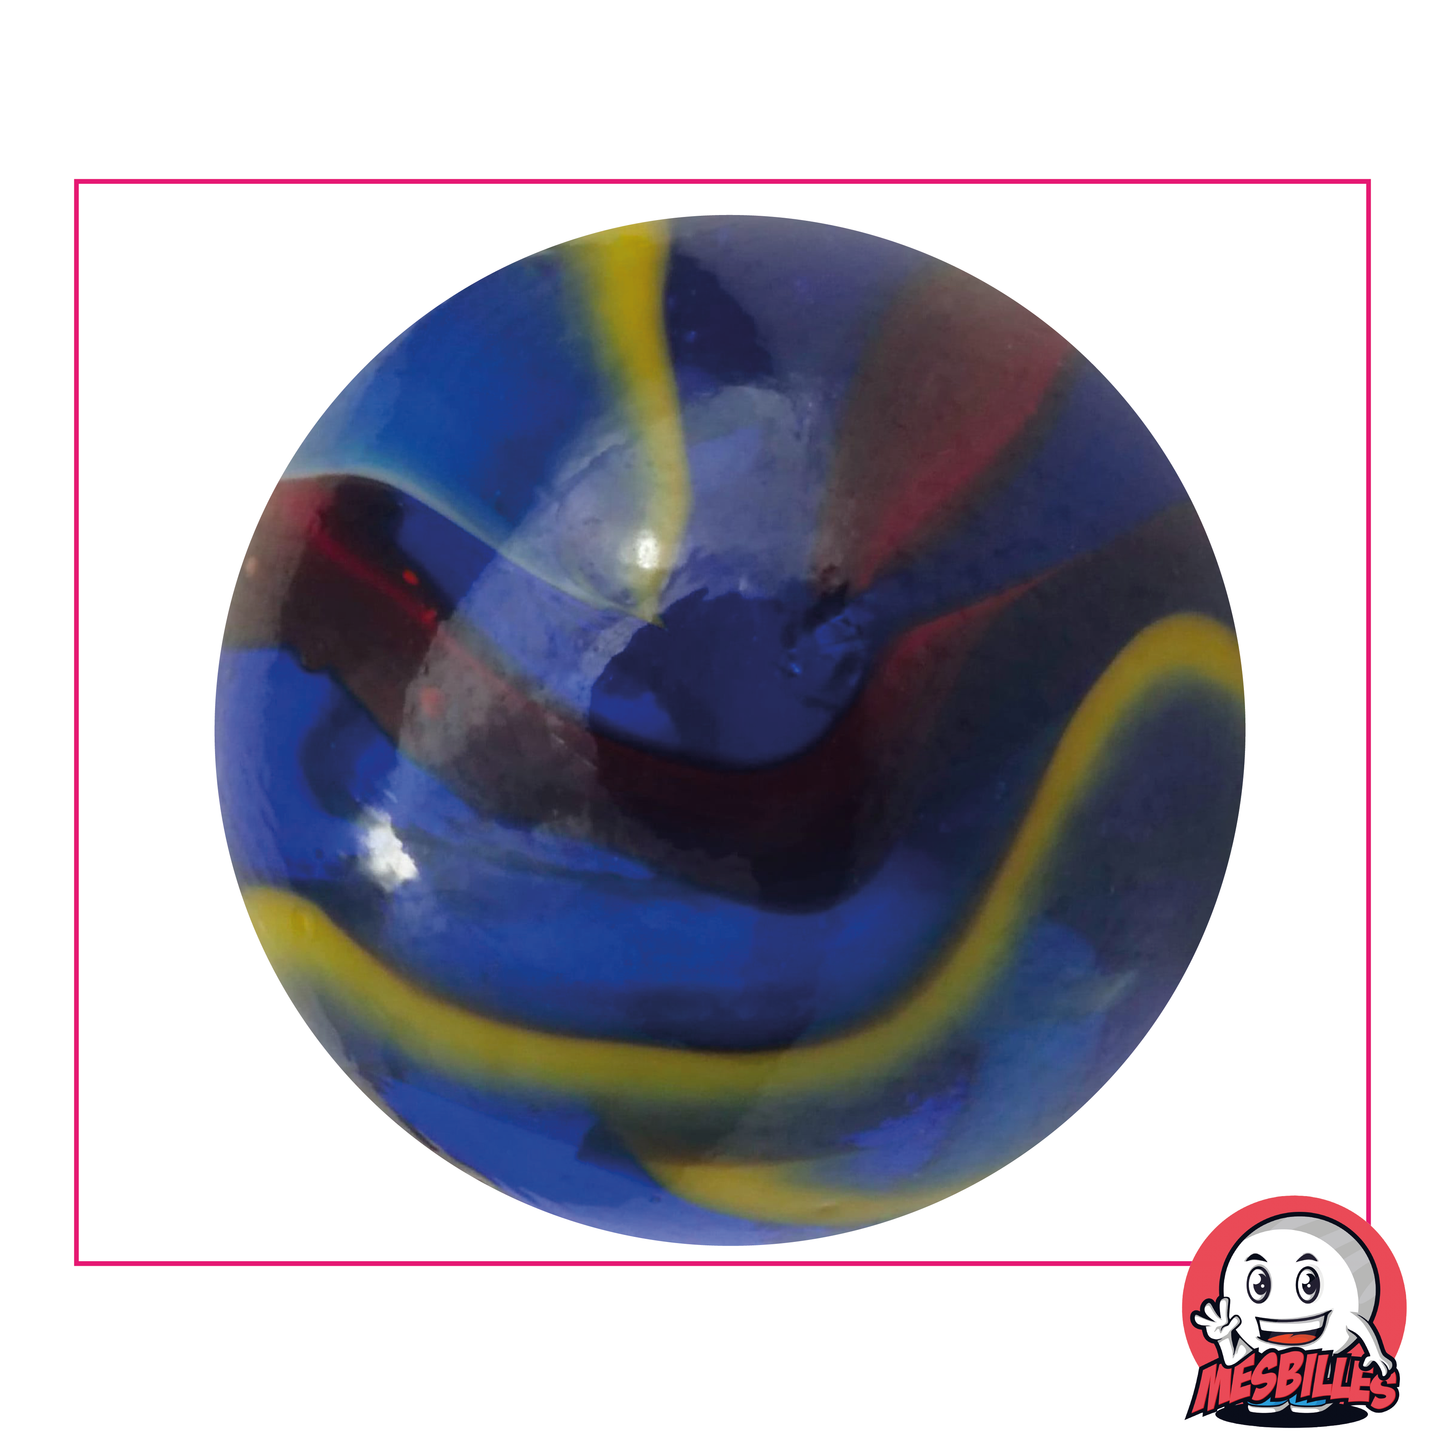 Bille Michel-Ange 50 mm en verre bleu, avec striures rouges, blanches et jaunes - MesBilles